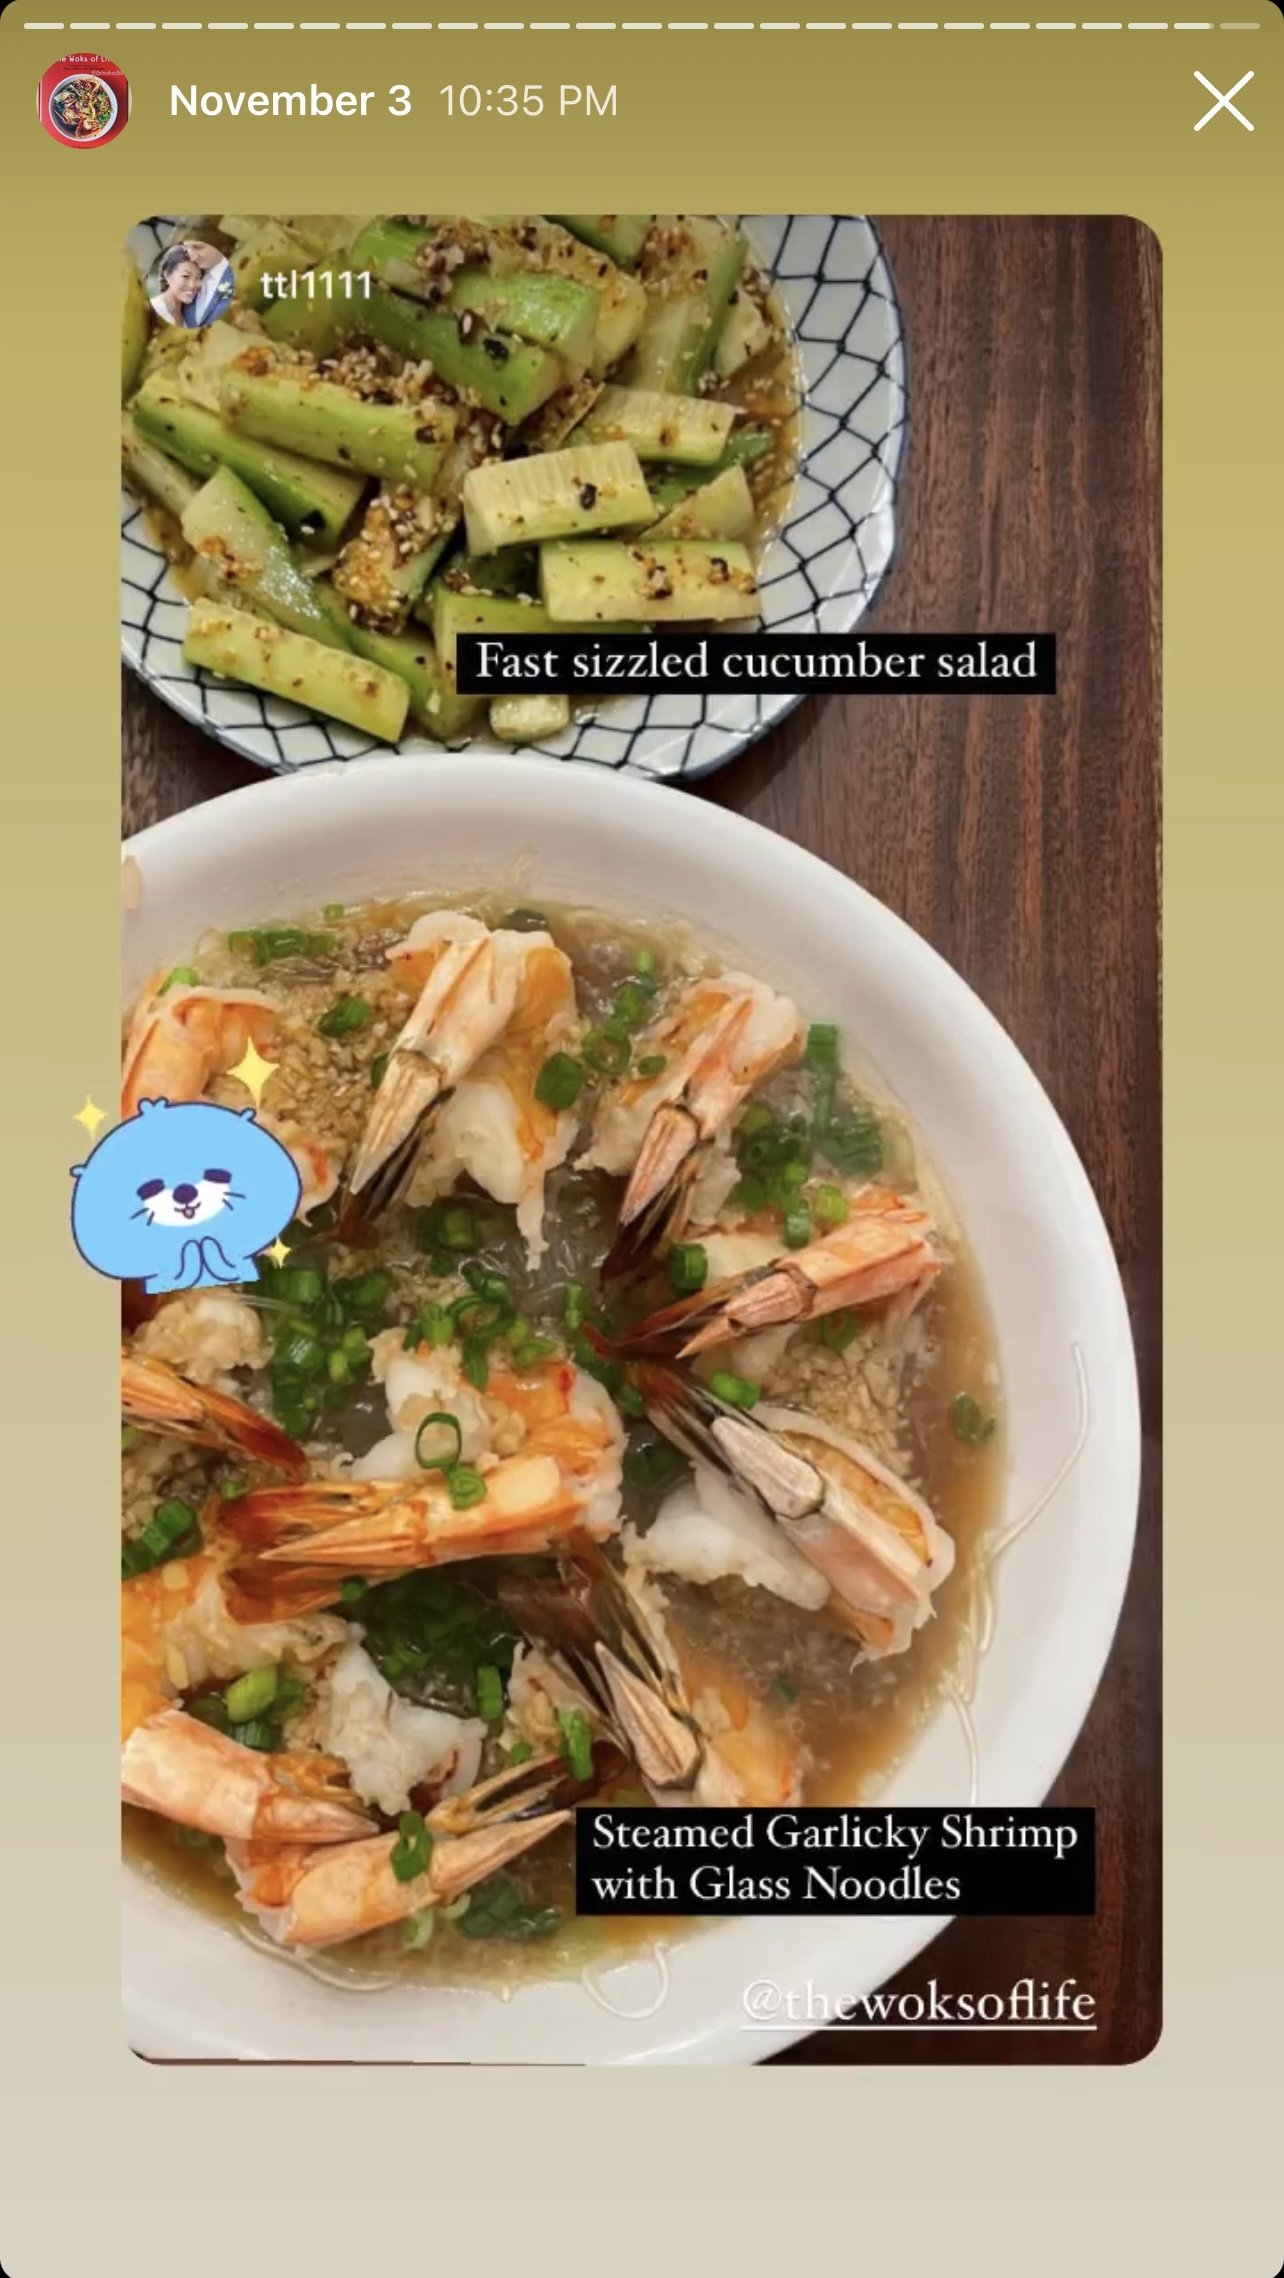 Cucumber Salad and Steamed Shrimp on Instagram